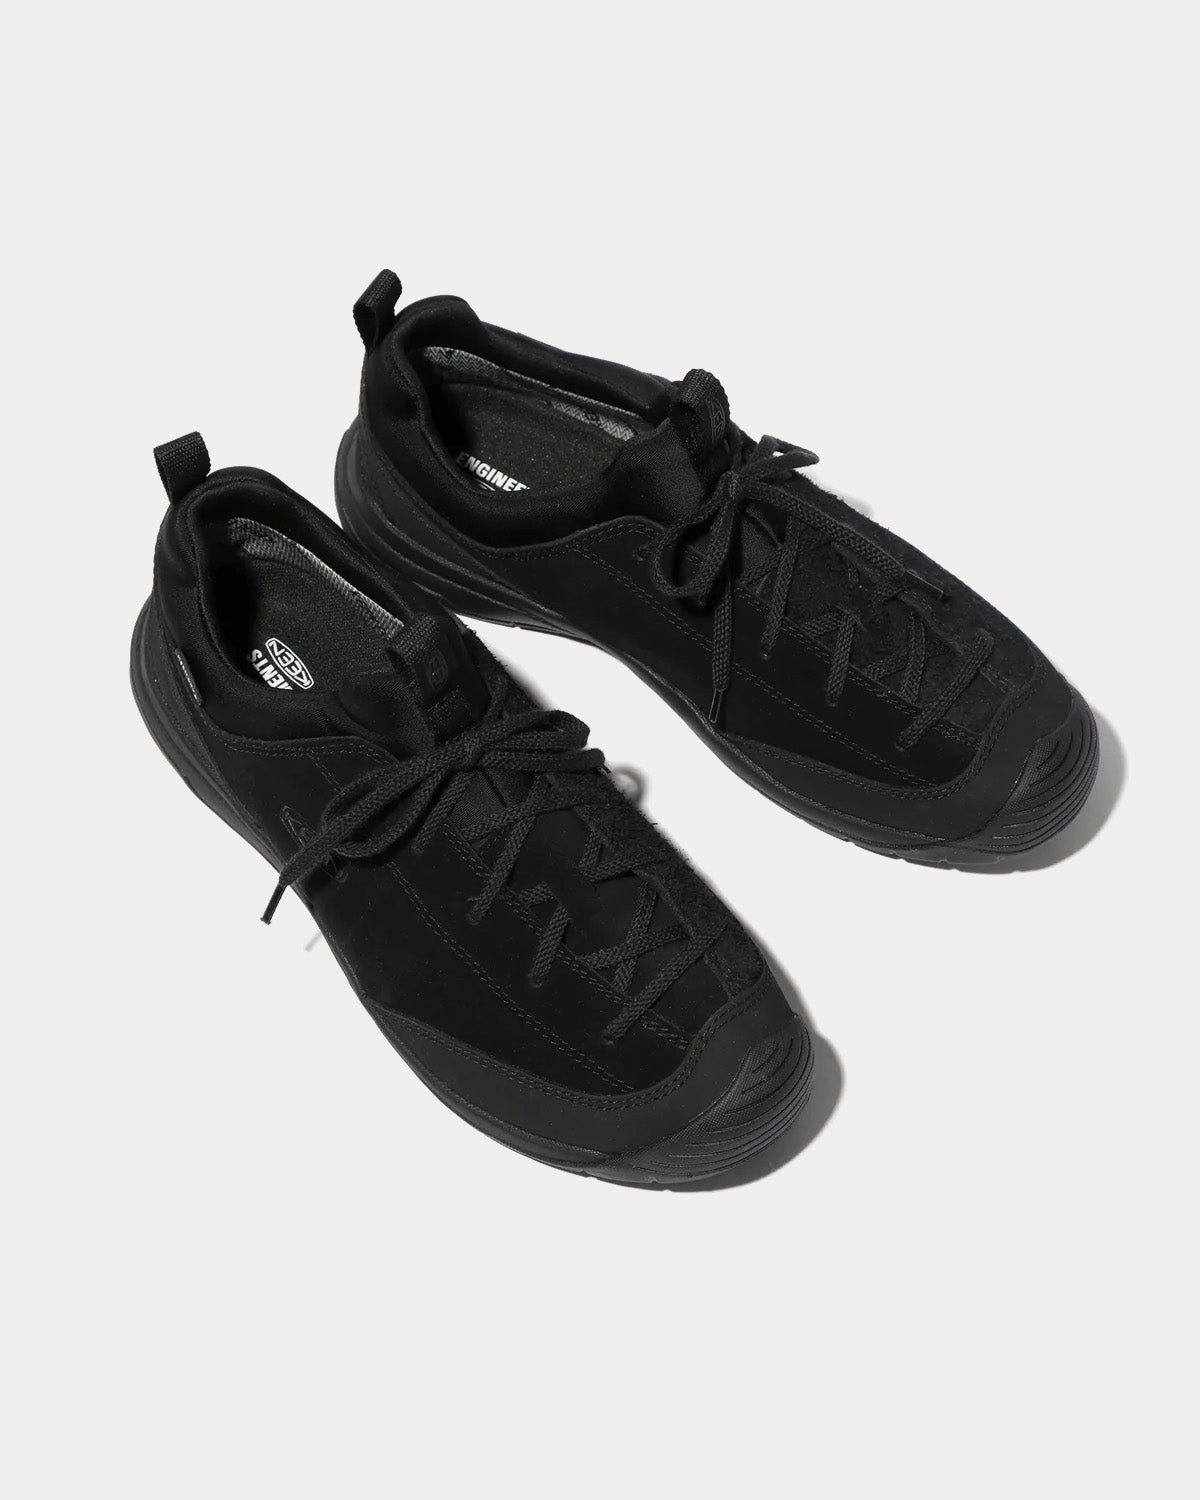 Keen x Engineered Garments - Jasper II Waterproof Moc Black Low Top Sneakers